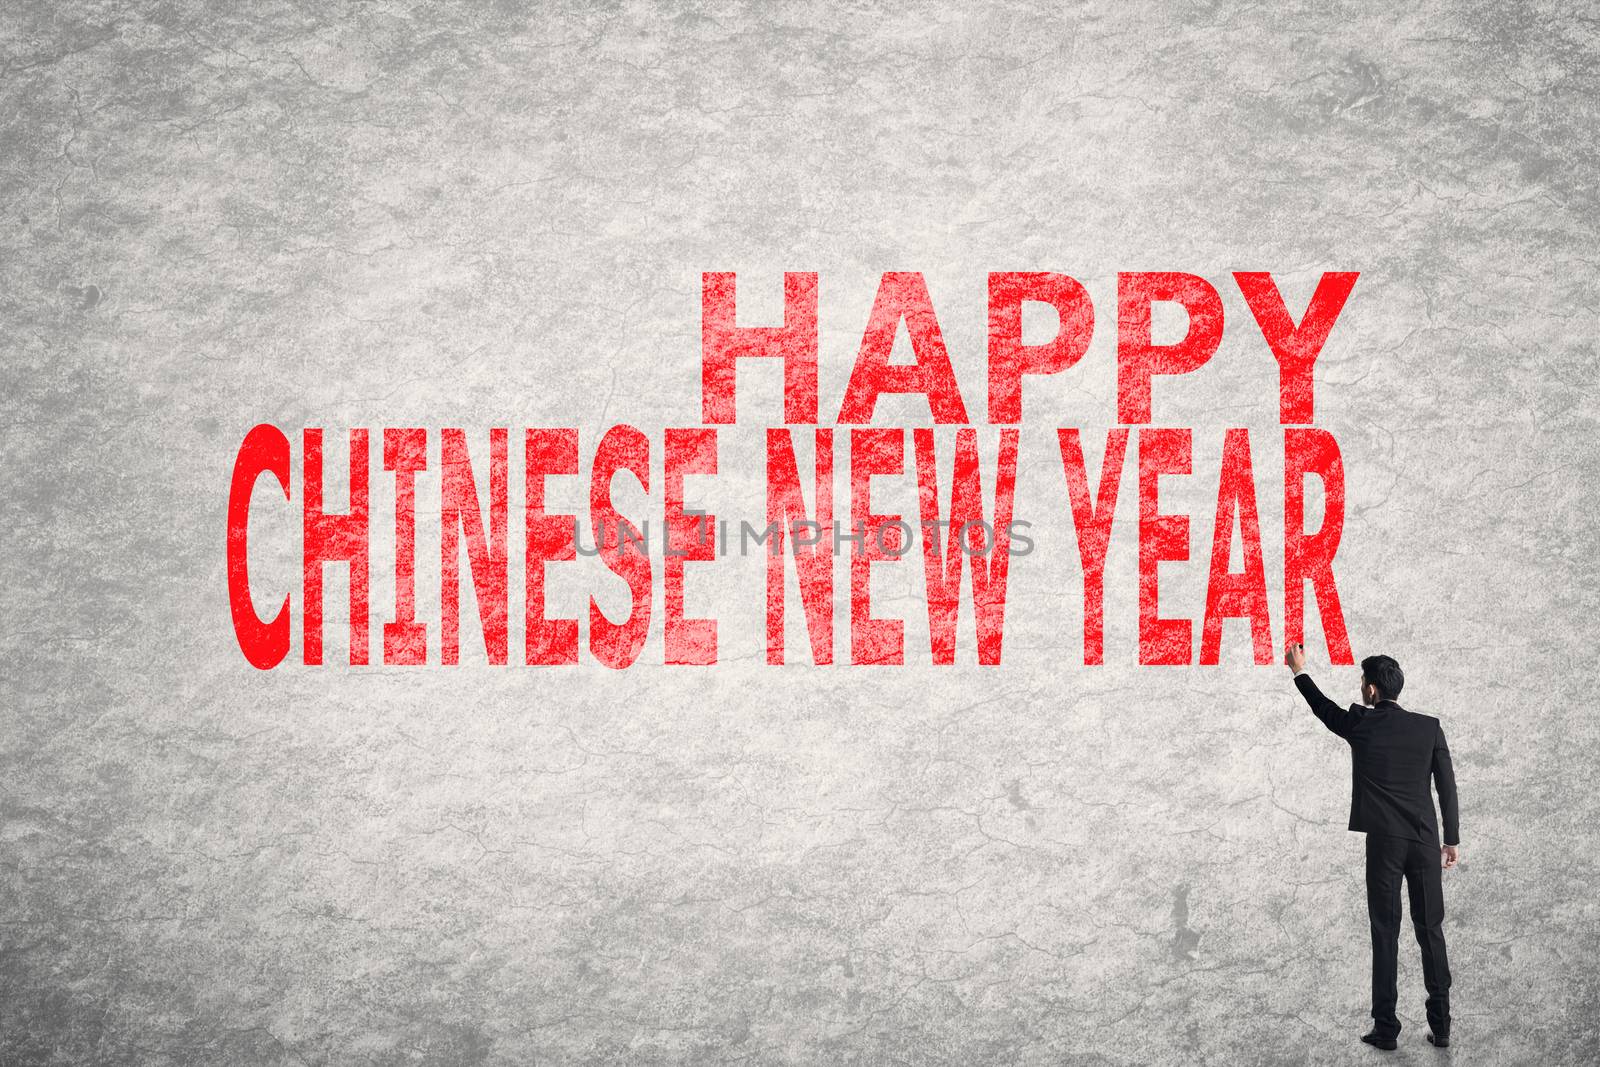 Happy Chinese New Year by elwynn